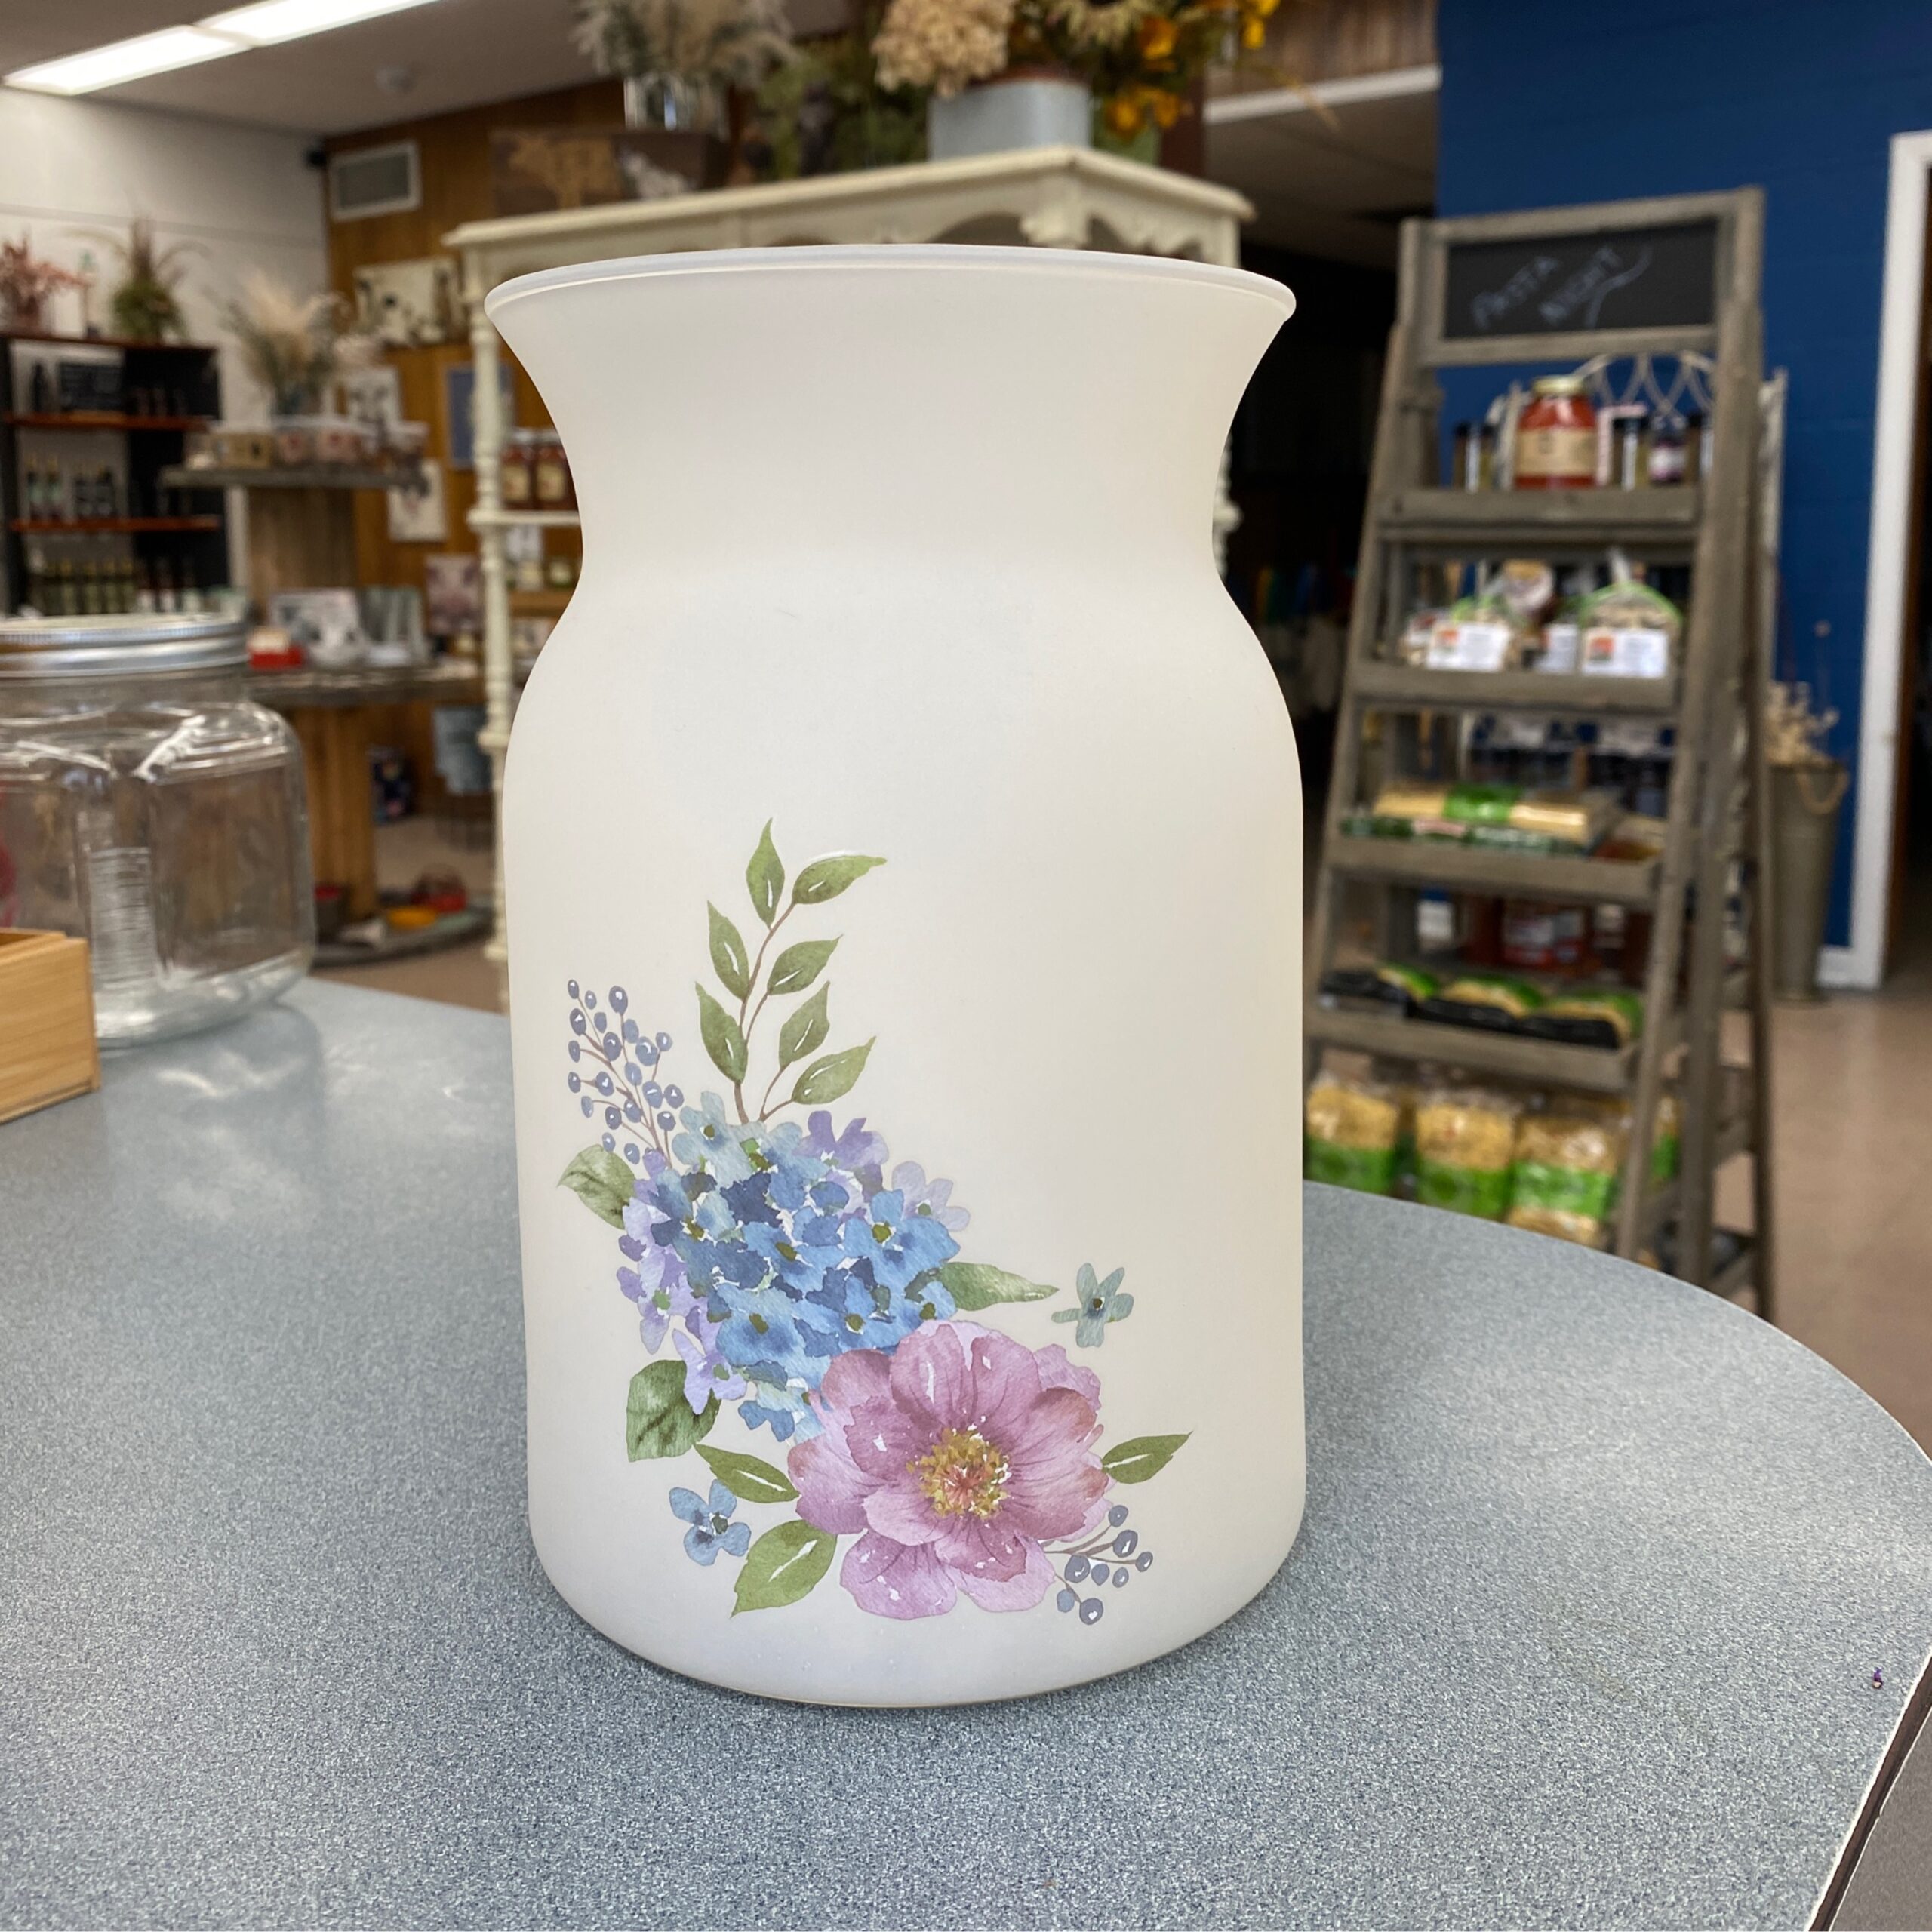 Florist Choice Arrangement with floral vase